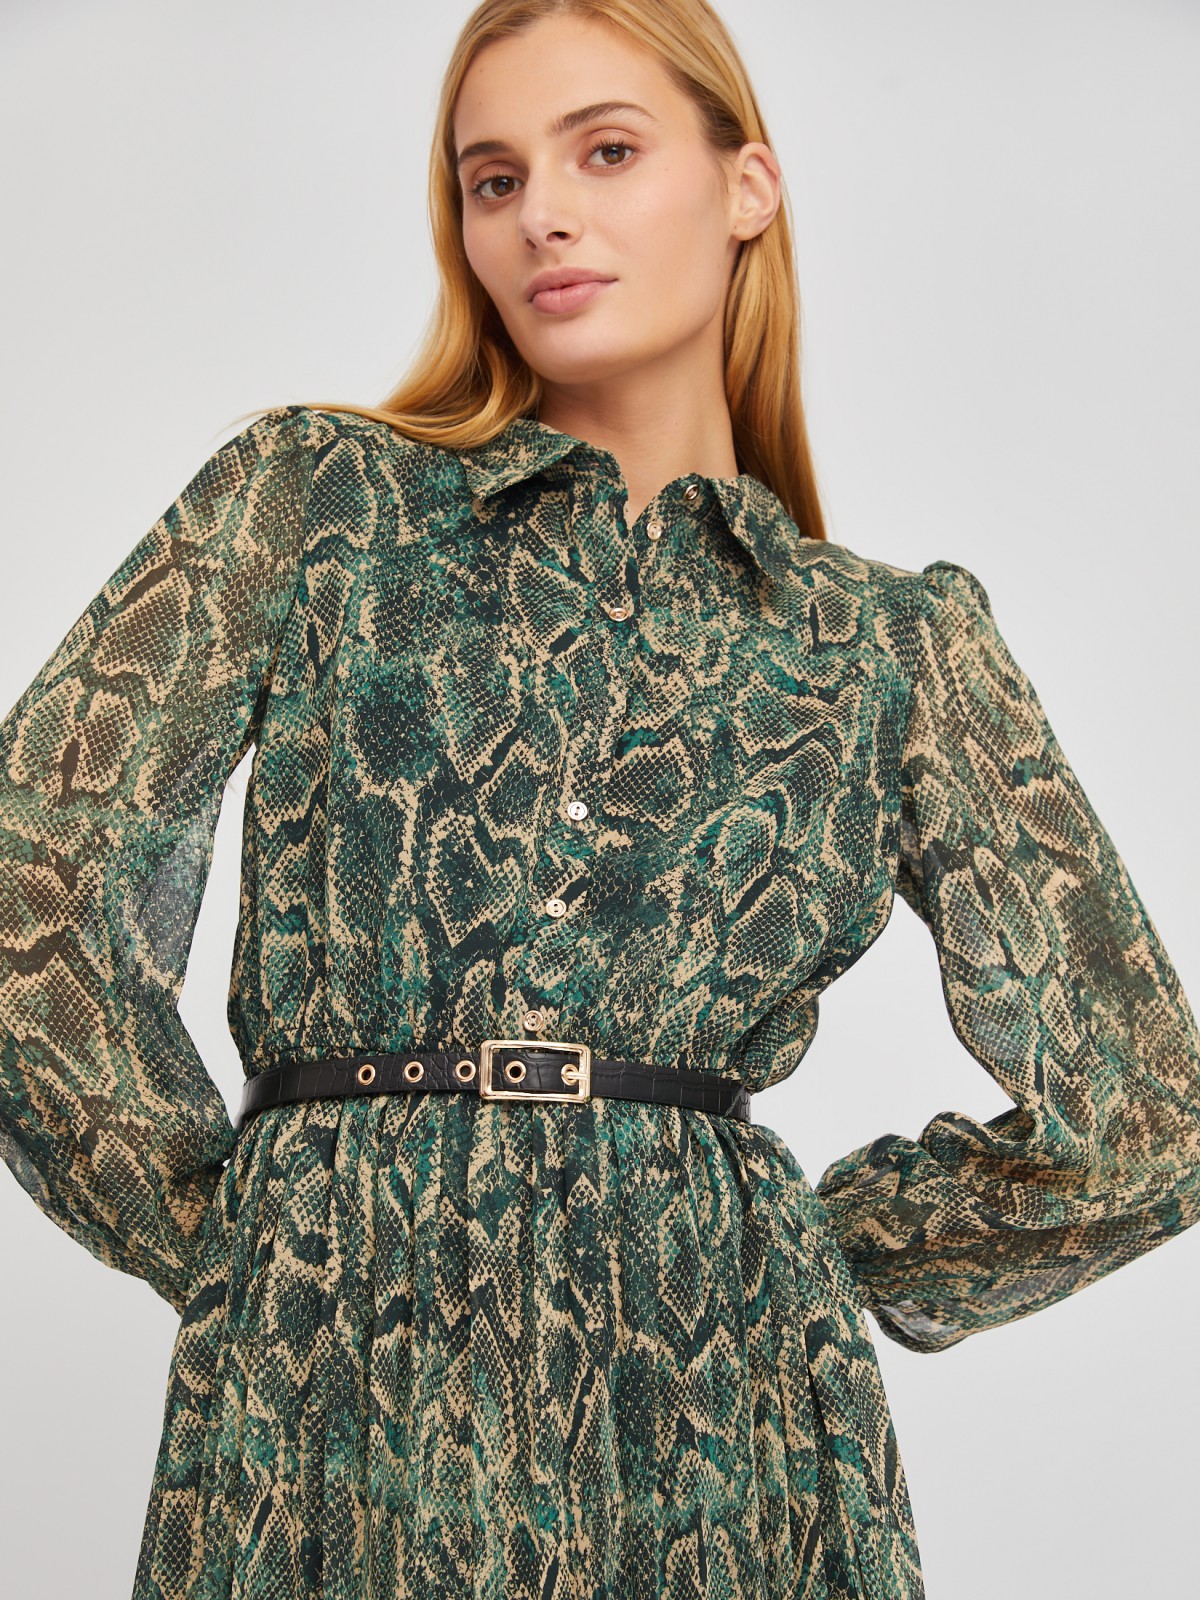 Шифоновое платье-рубашка длины миди с плиссировкой и акцентном на талии zolla 024118262123, цвет темно-зеленый, размер XS - фото 2